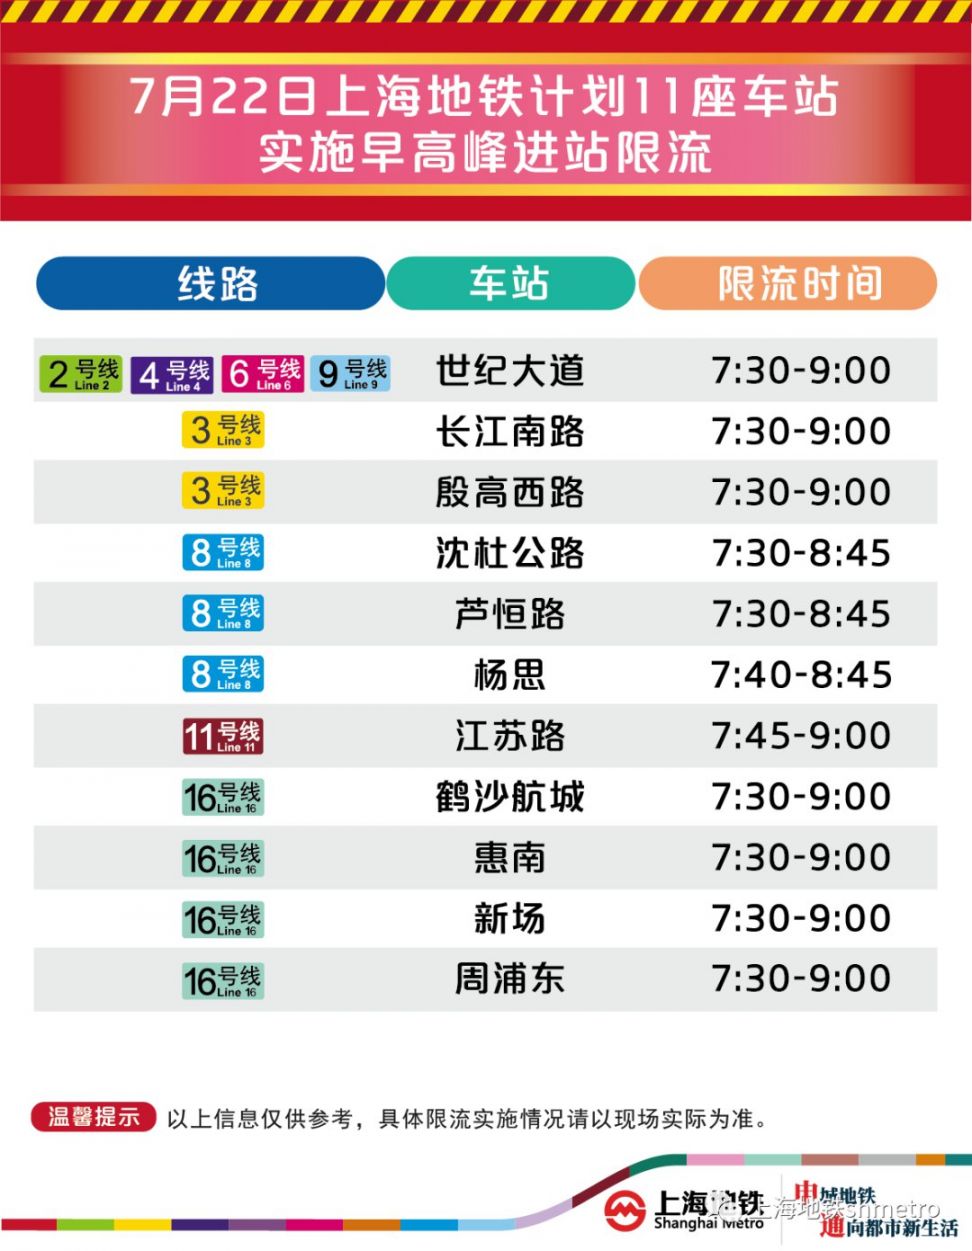 7月22日上海11座地铁站早高峰限流 (附舒适度预告)